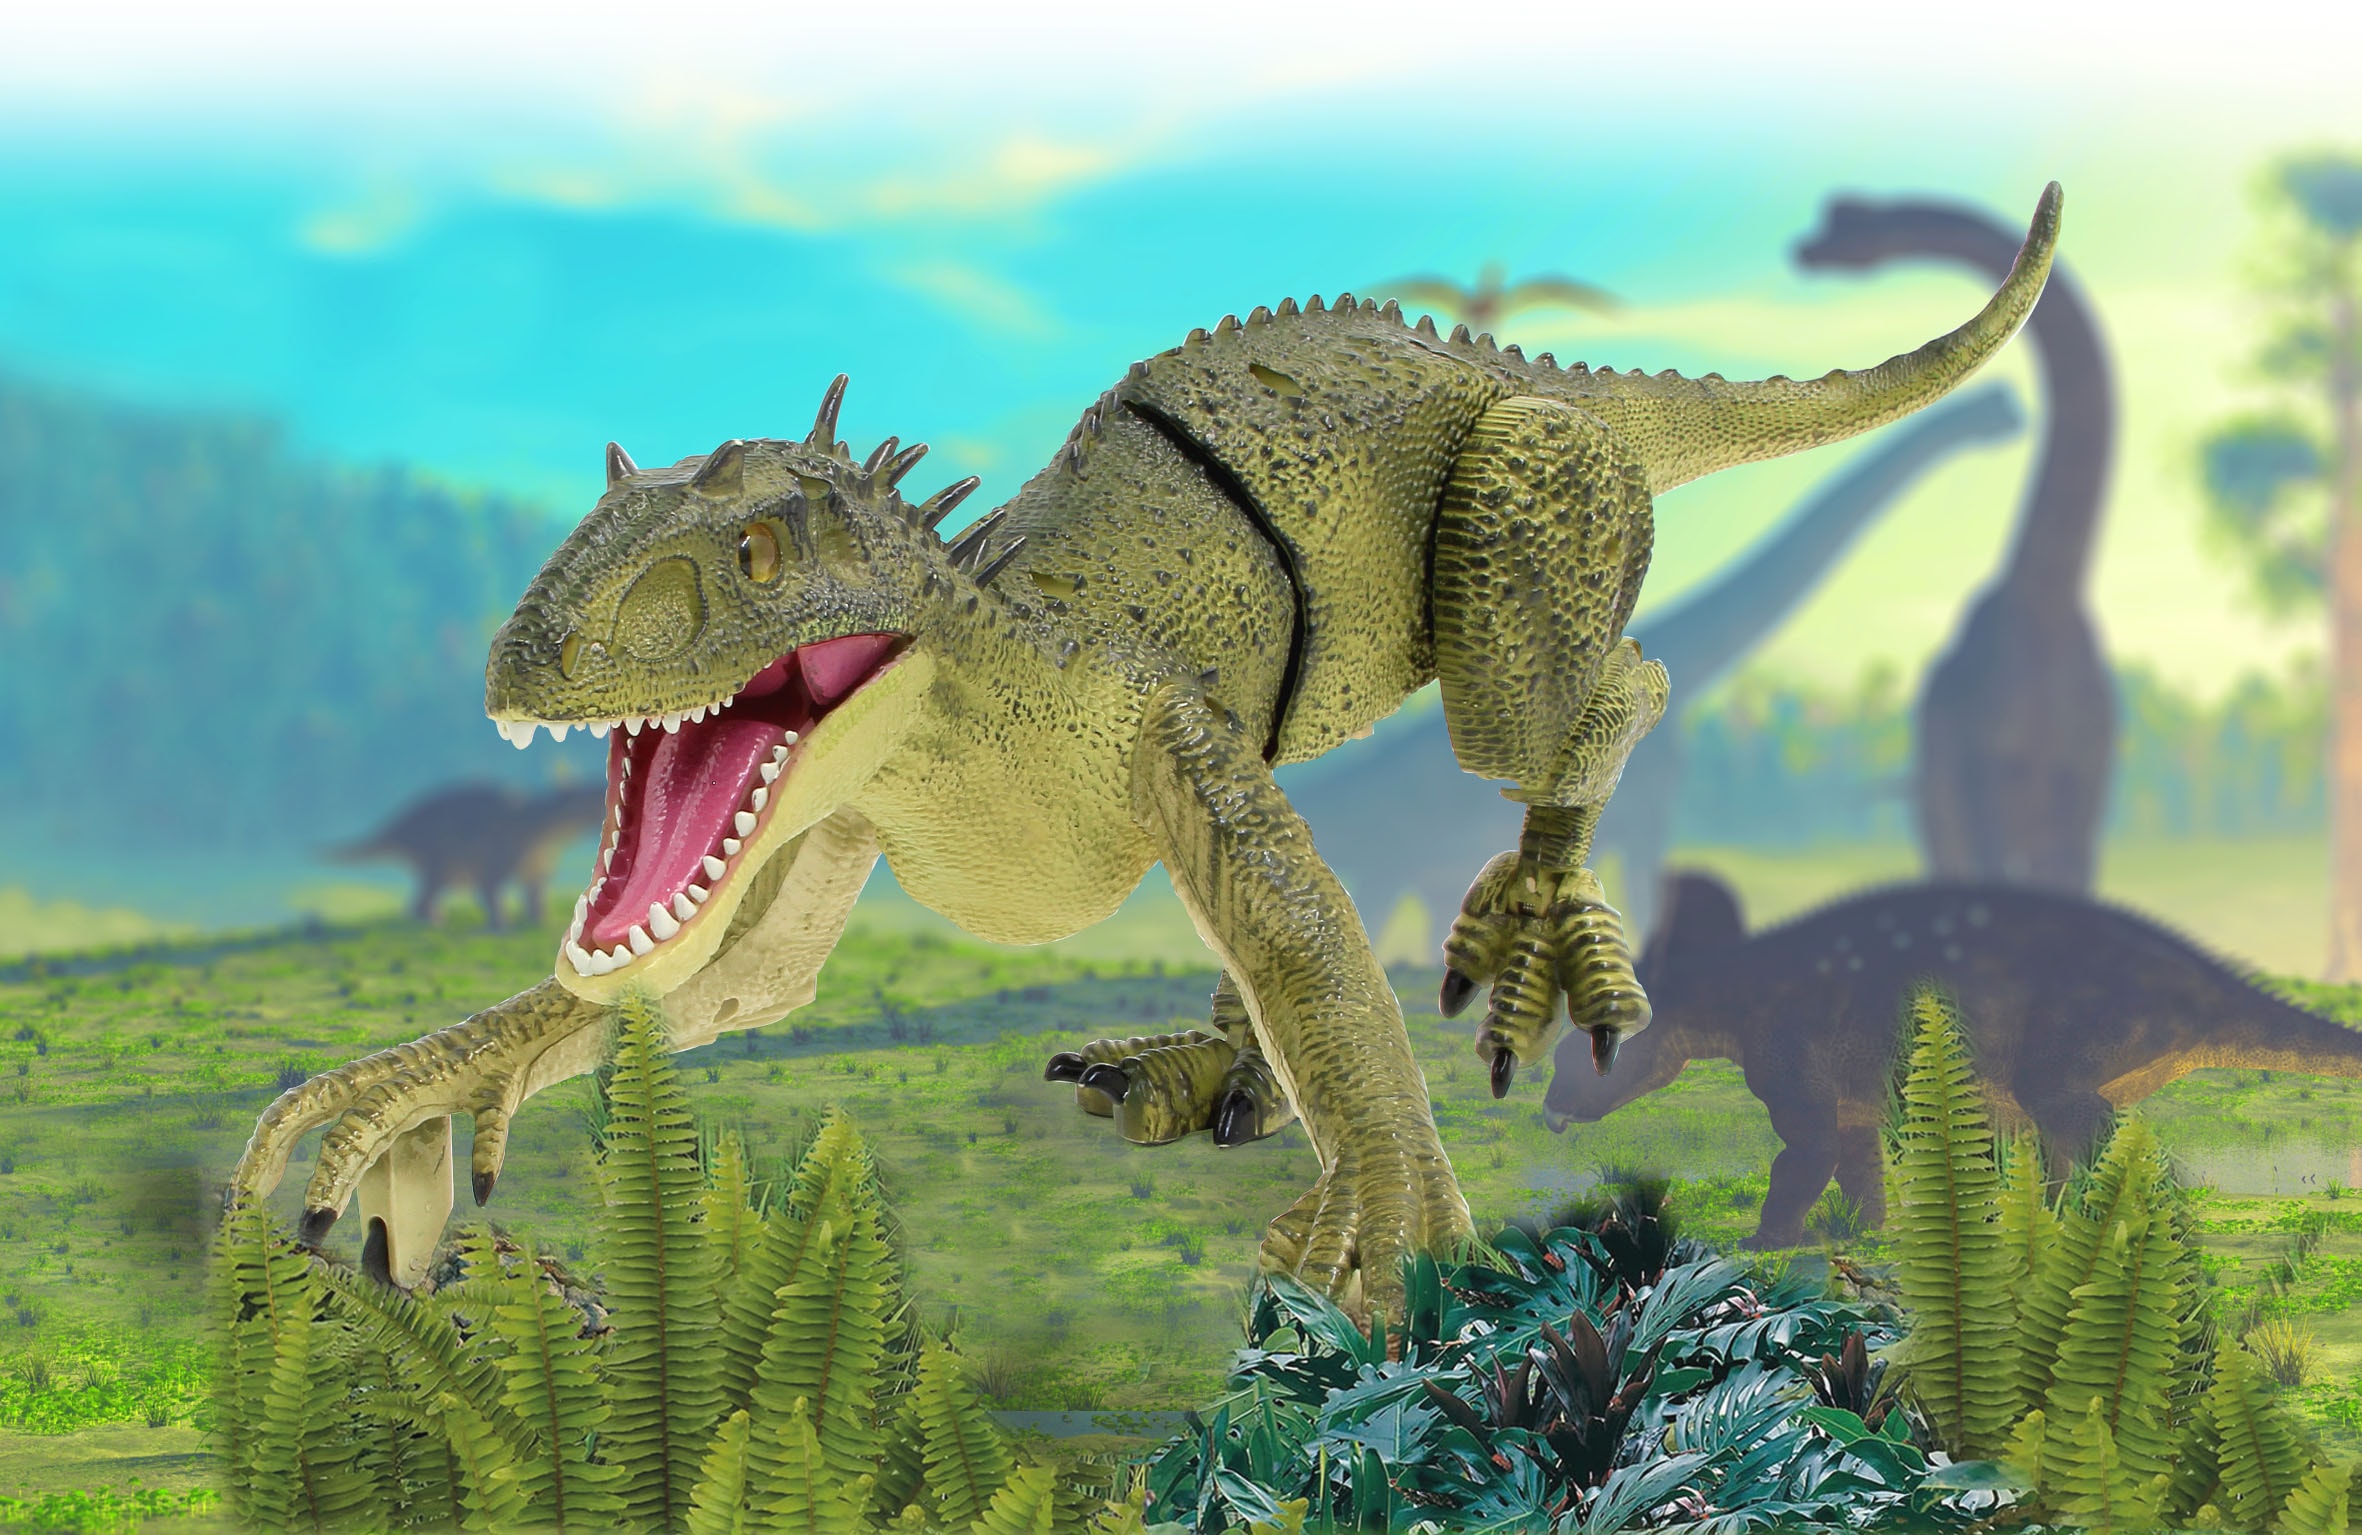 Jamara RC-Tier »Dinosaurier Exoraptor, Li-Ion 3,7V, 2,4GHz, grün«, mit Licht und Sound